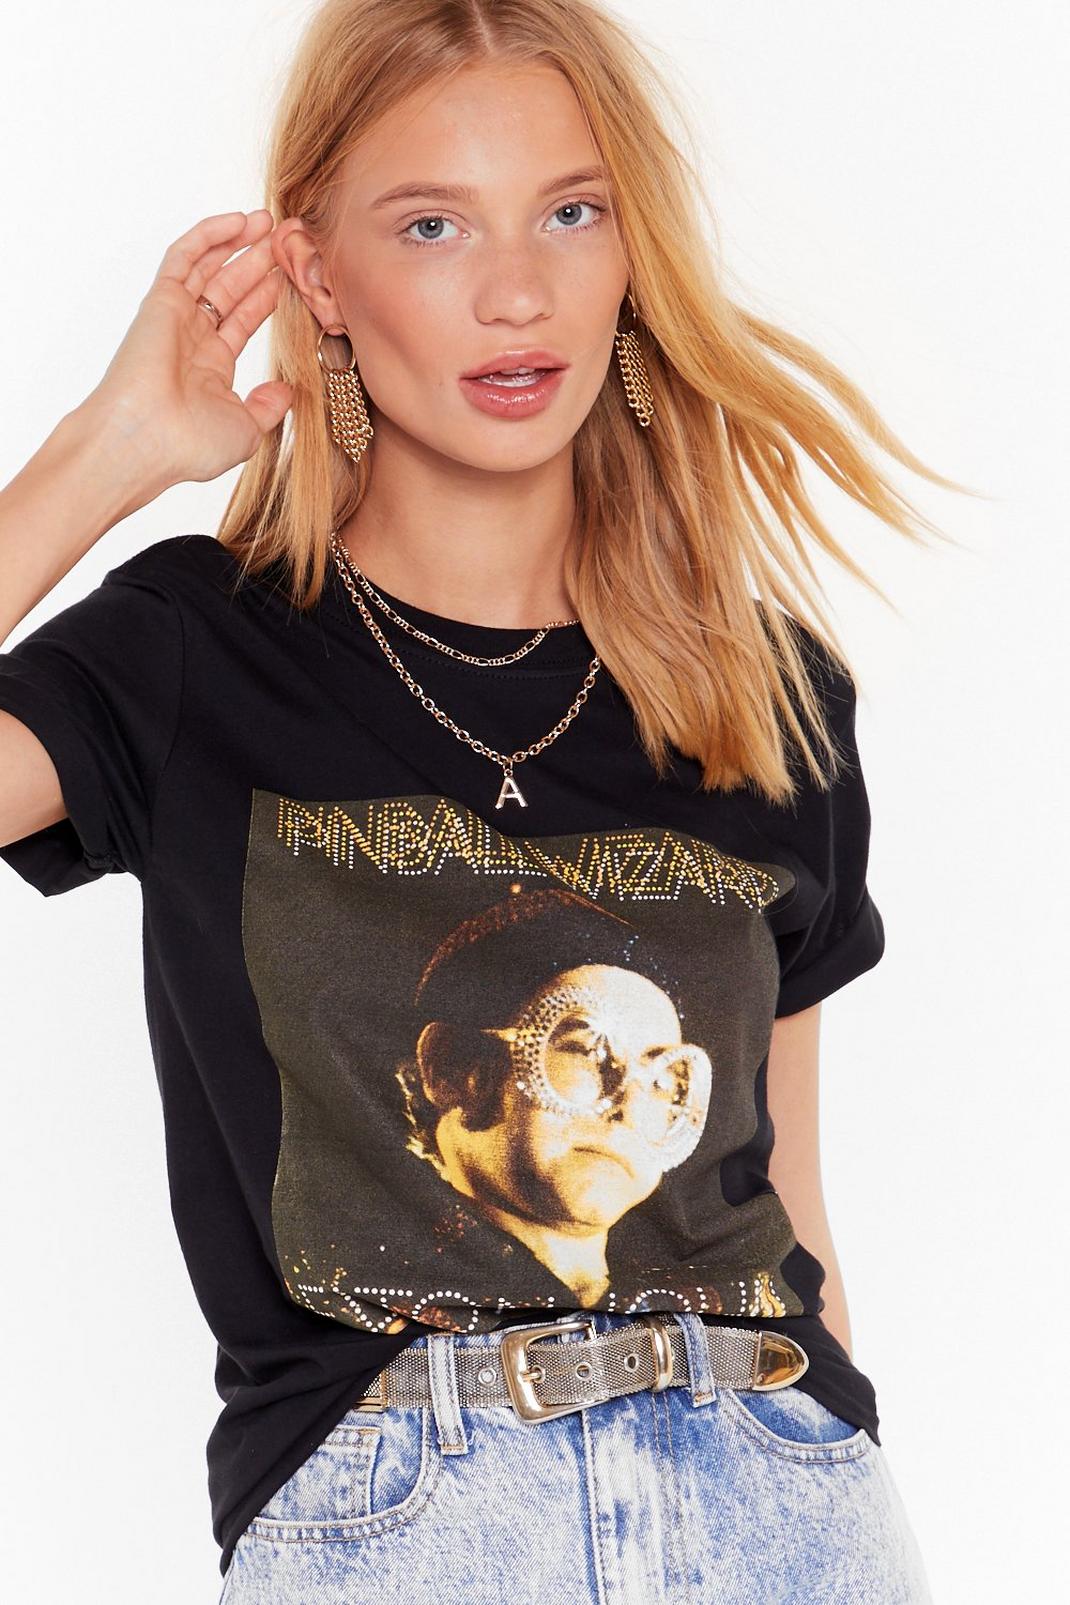 T-shirt Elton John Pinball Wizard image number 1